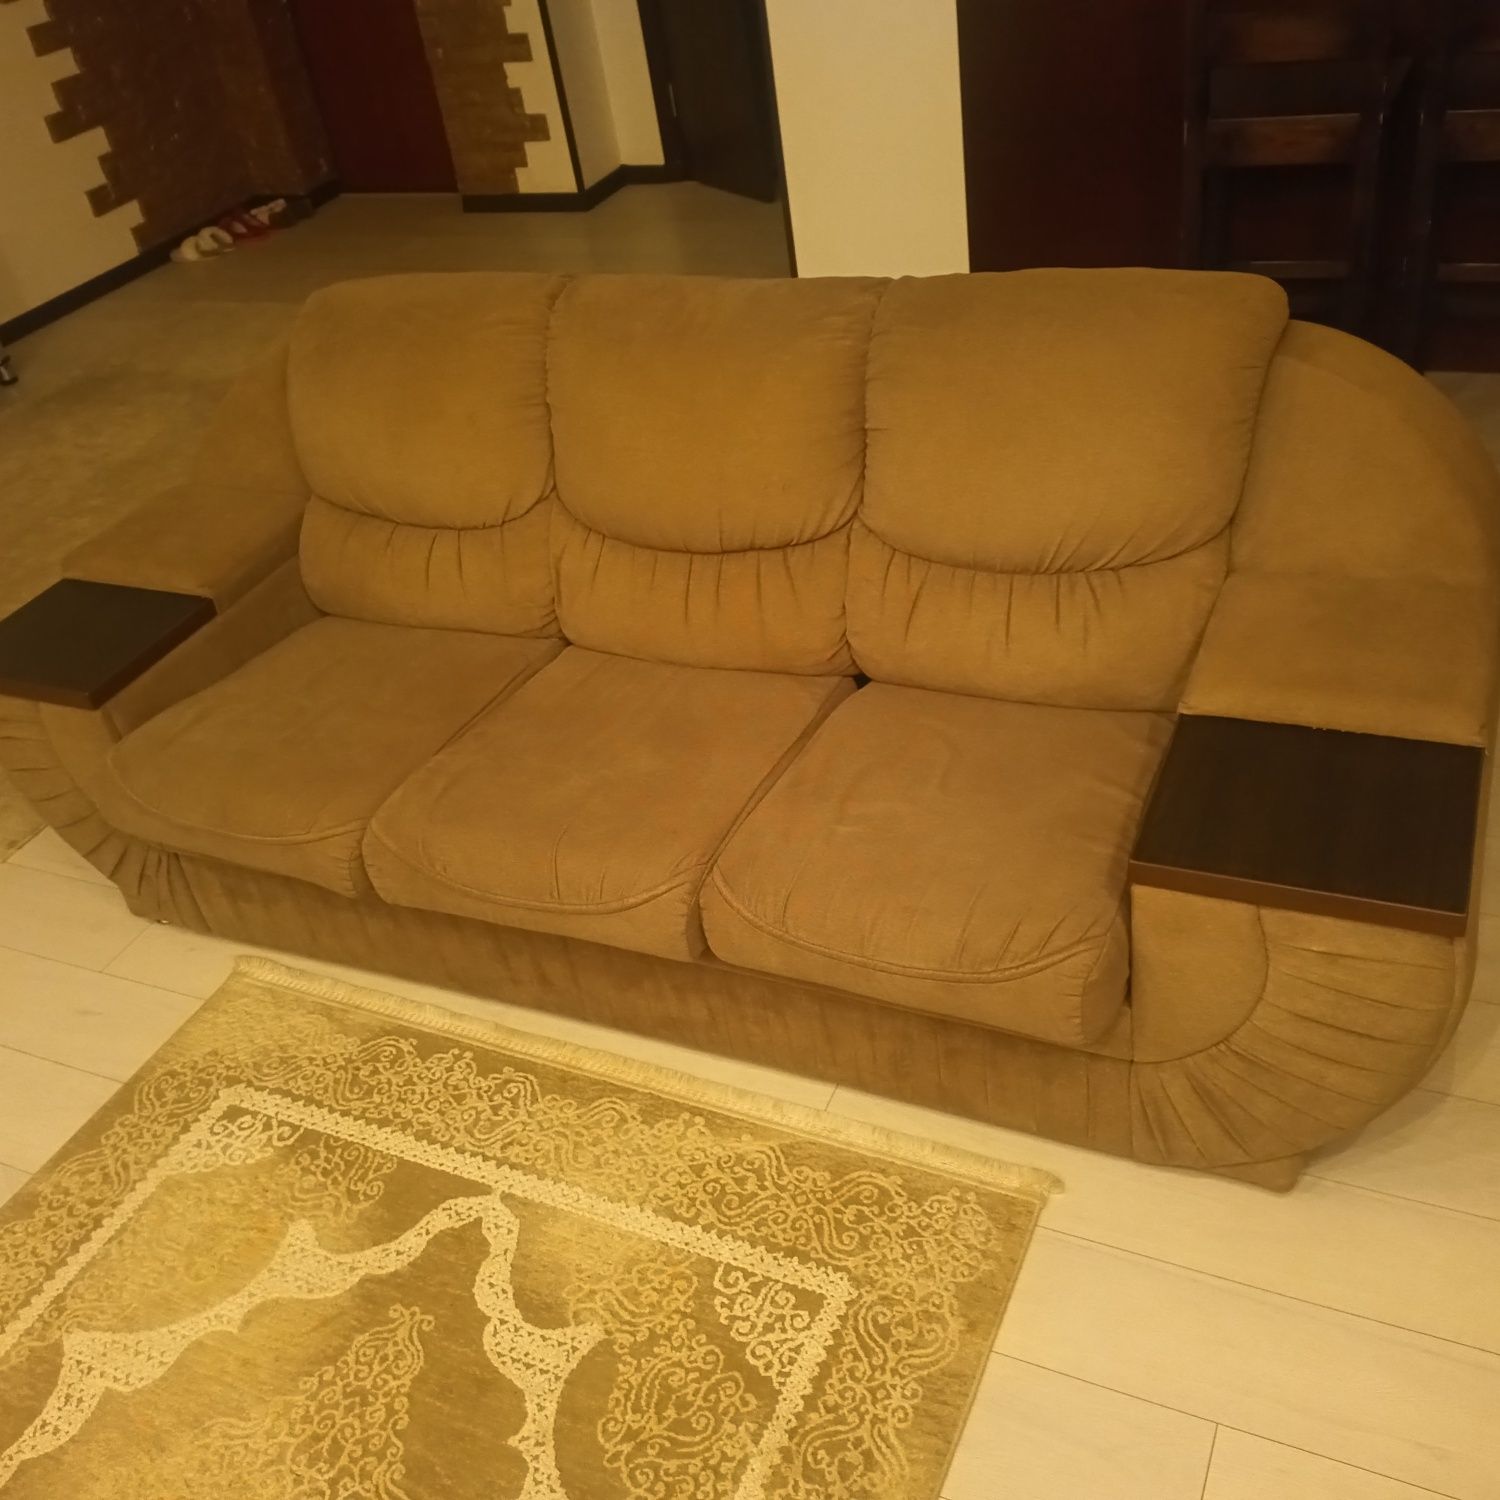 Мягкая мебель диван и кресла